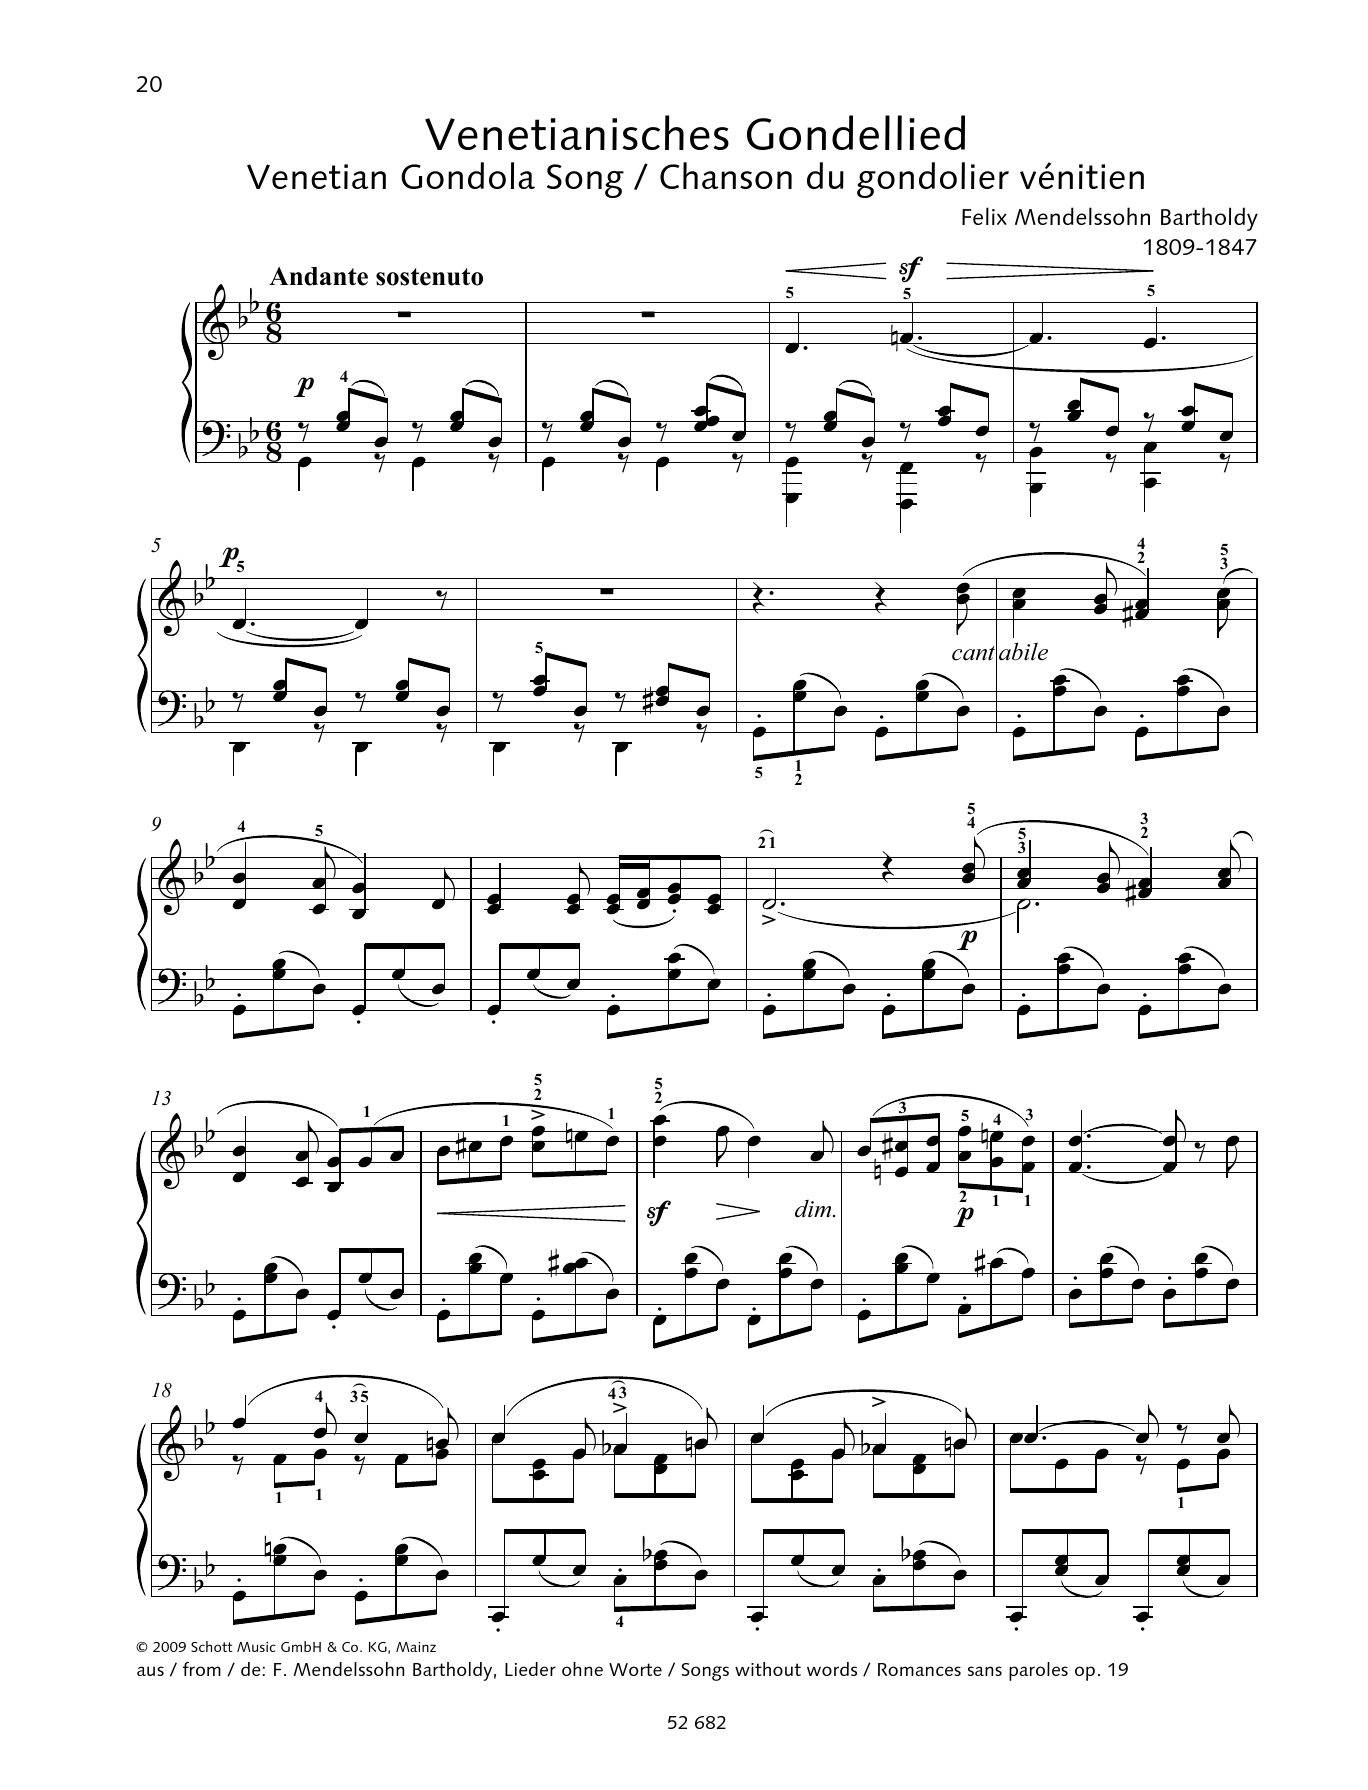 Download Felix Mendelssohn Bartholdy Venetian Gondola Song in G minor Sheet Music